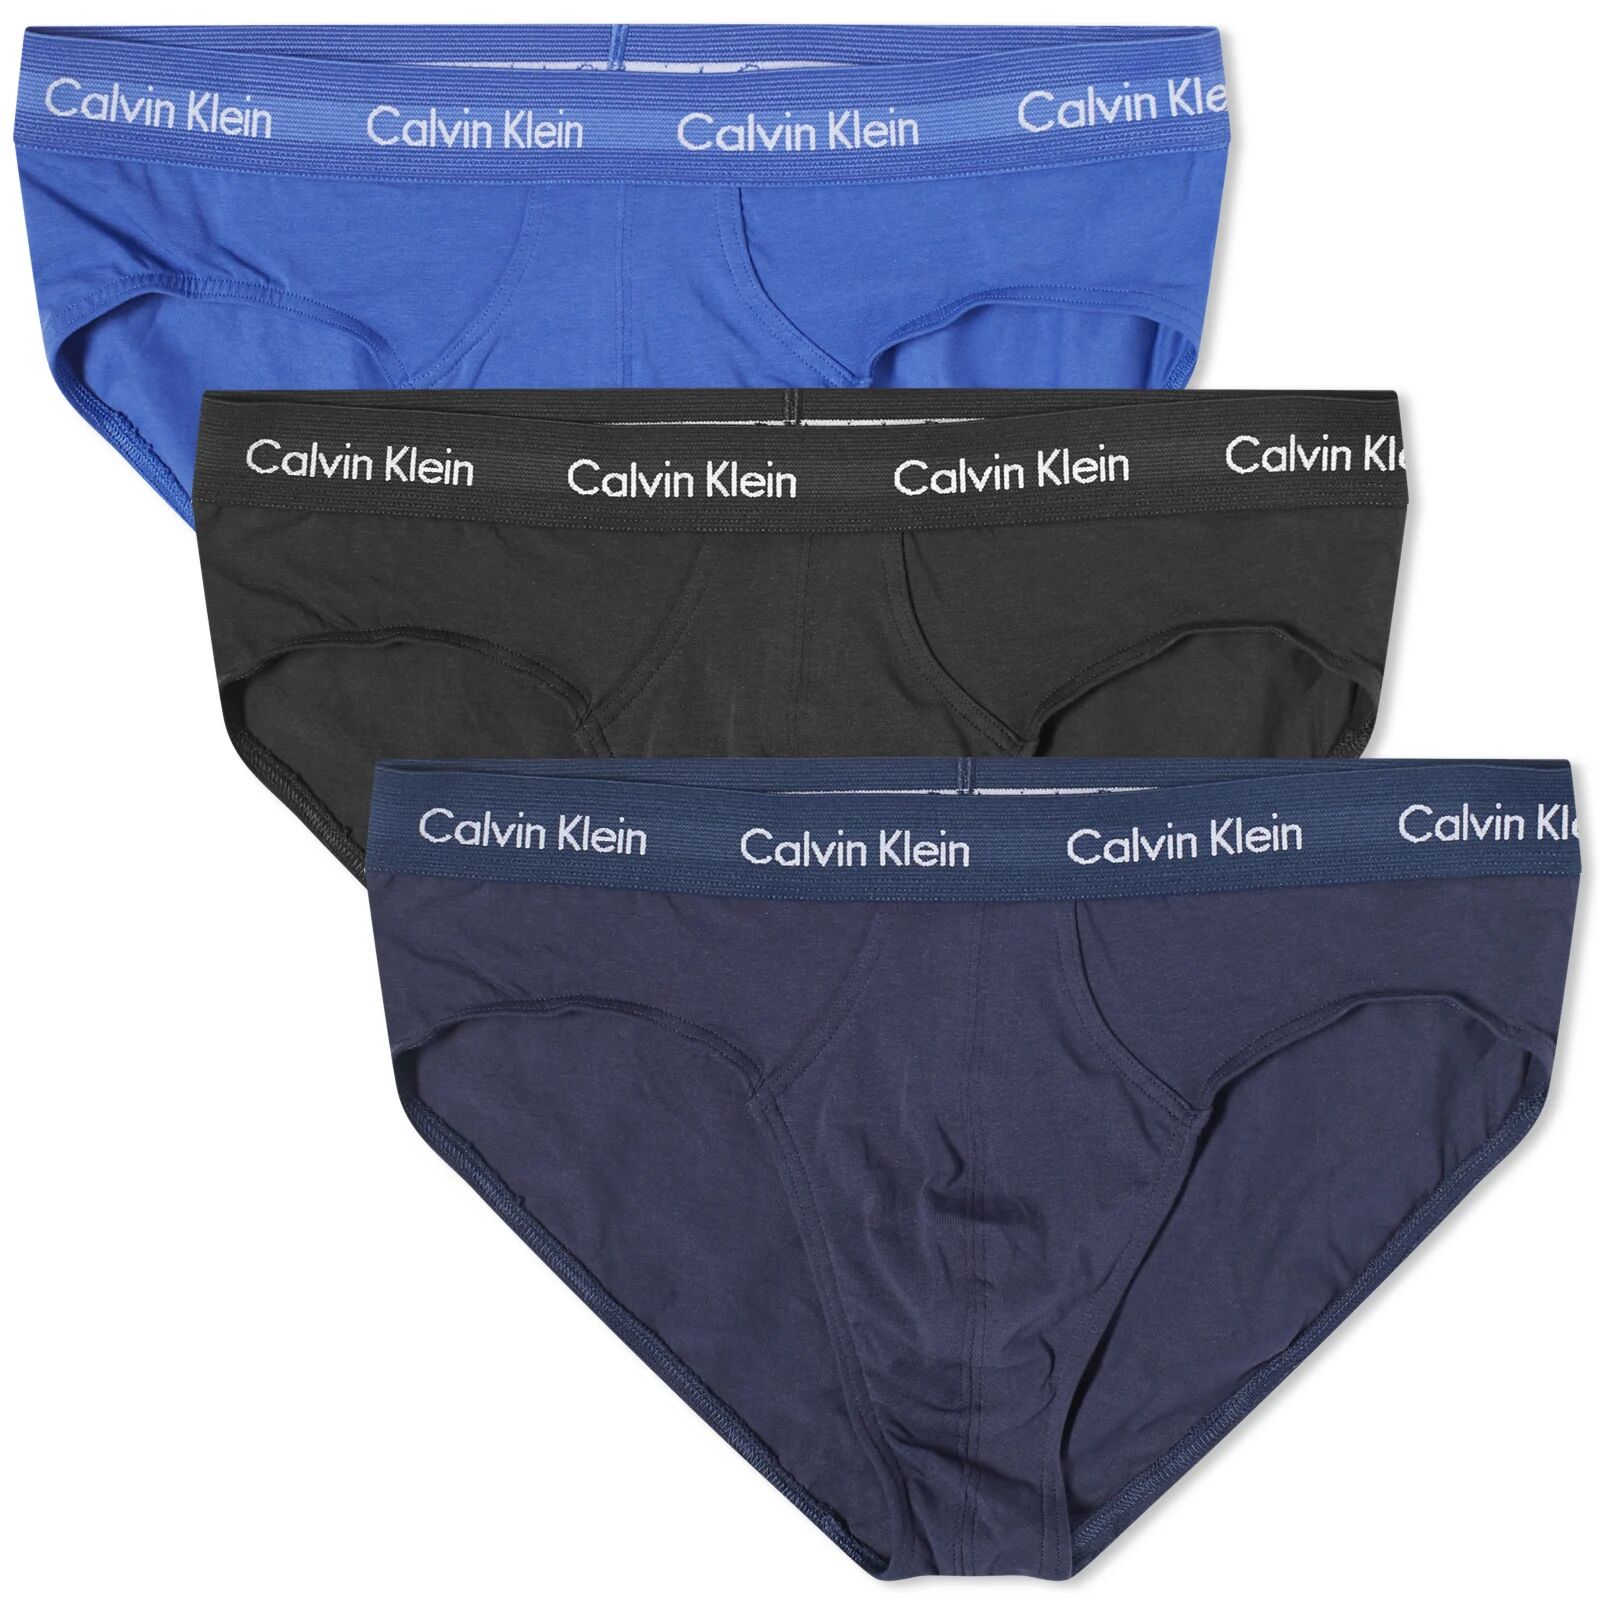 Calvin Klein Men's CK Underwear Hip Brief - 3 Pack in Black/Blue, Size Large